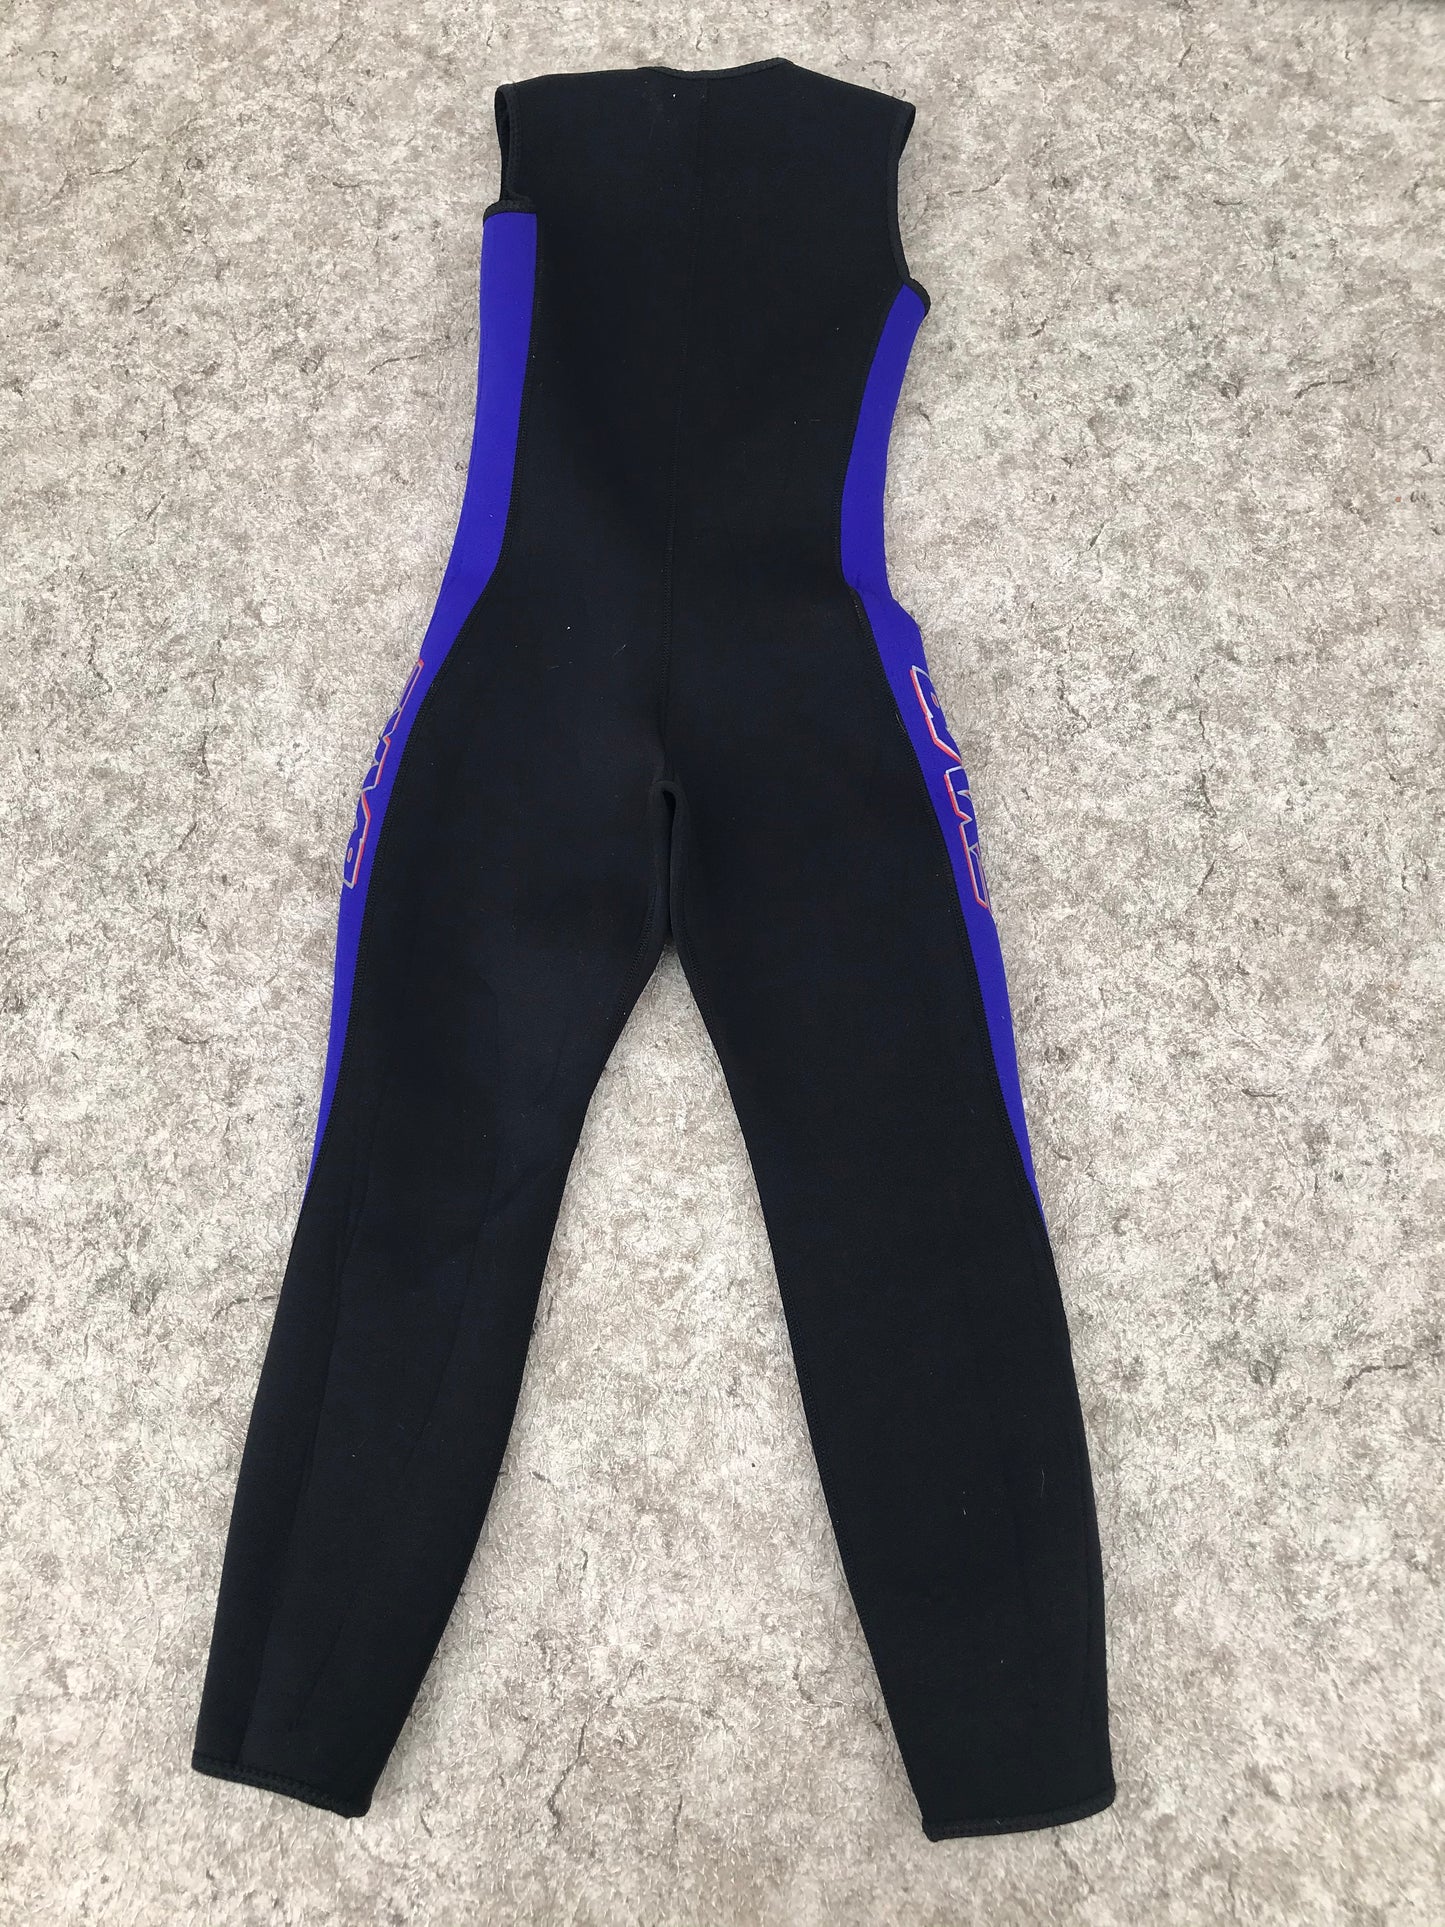 Wetsuit Child Size 10 Full John Bare Black Purple 2-3 mm Neoprene Excellent